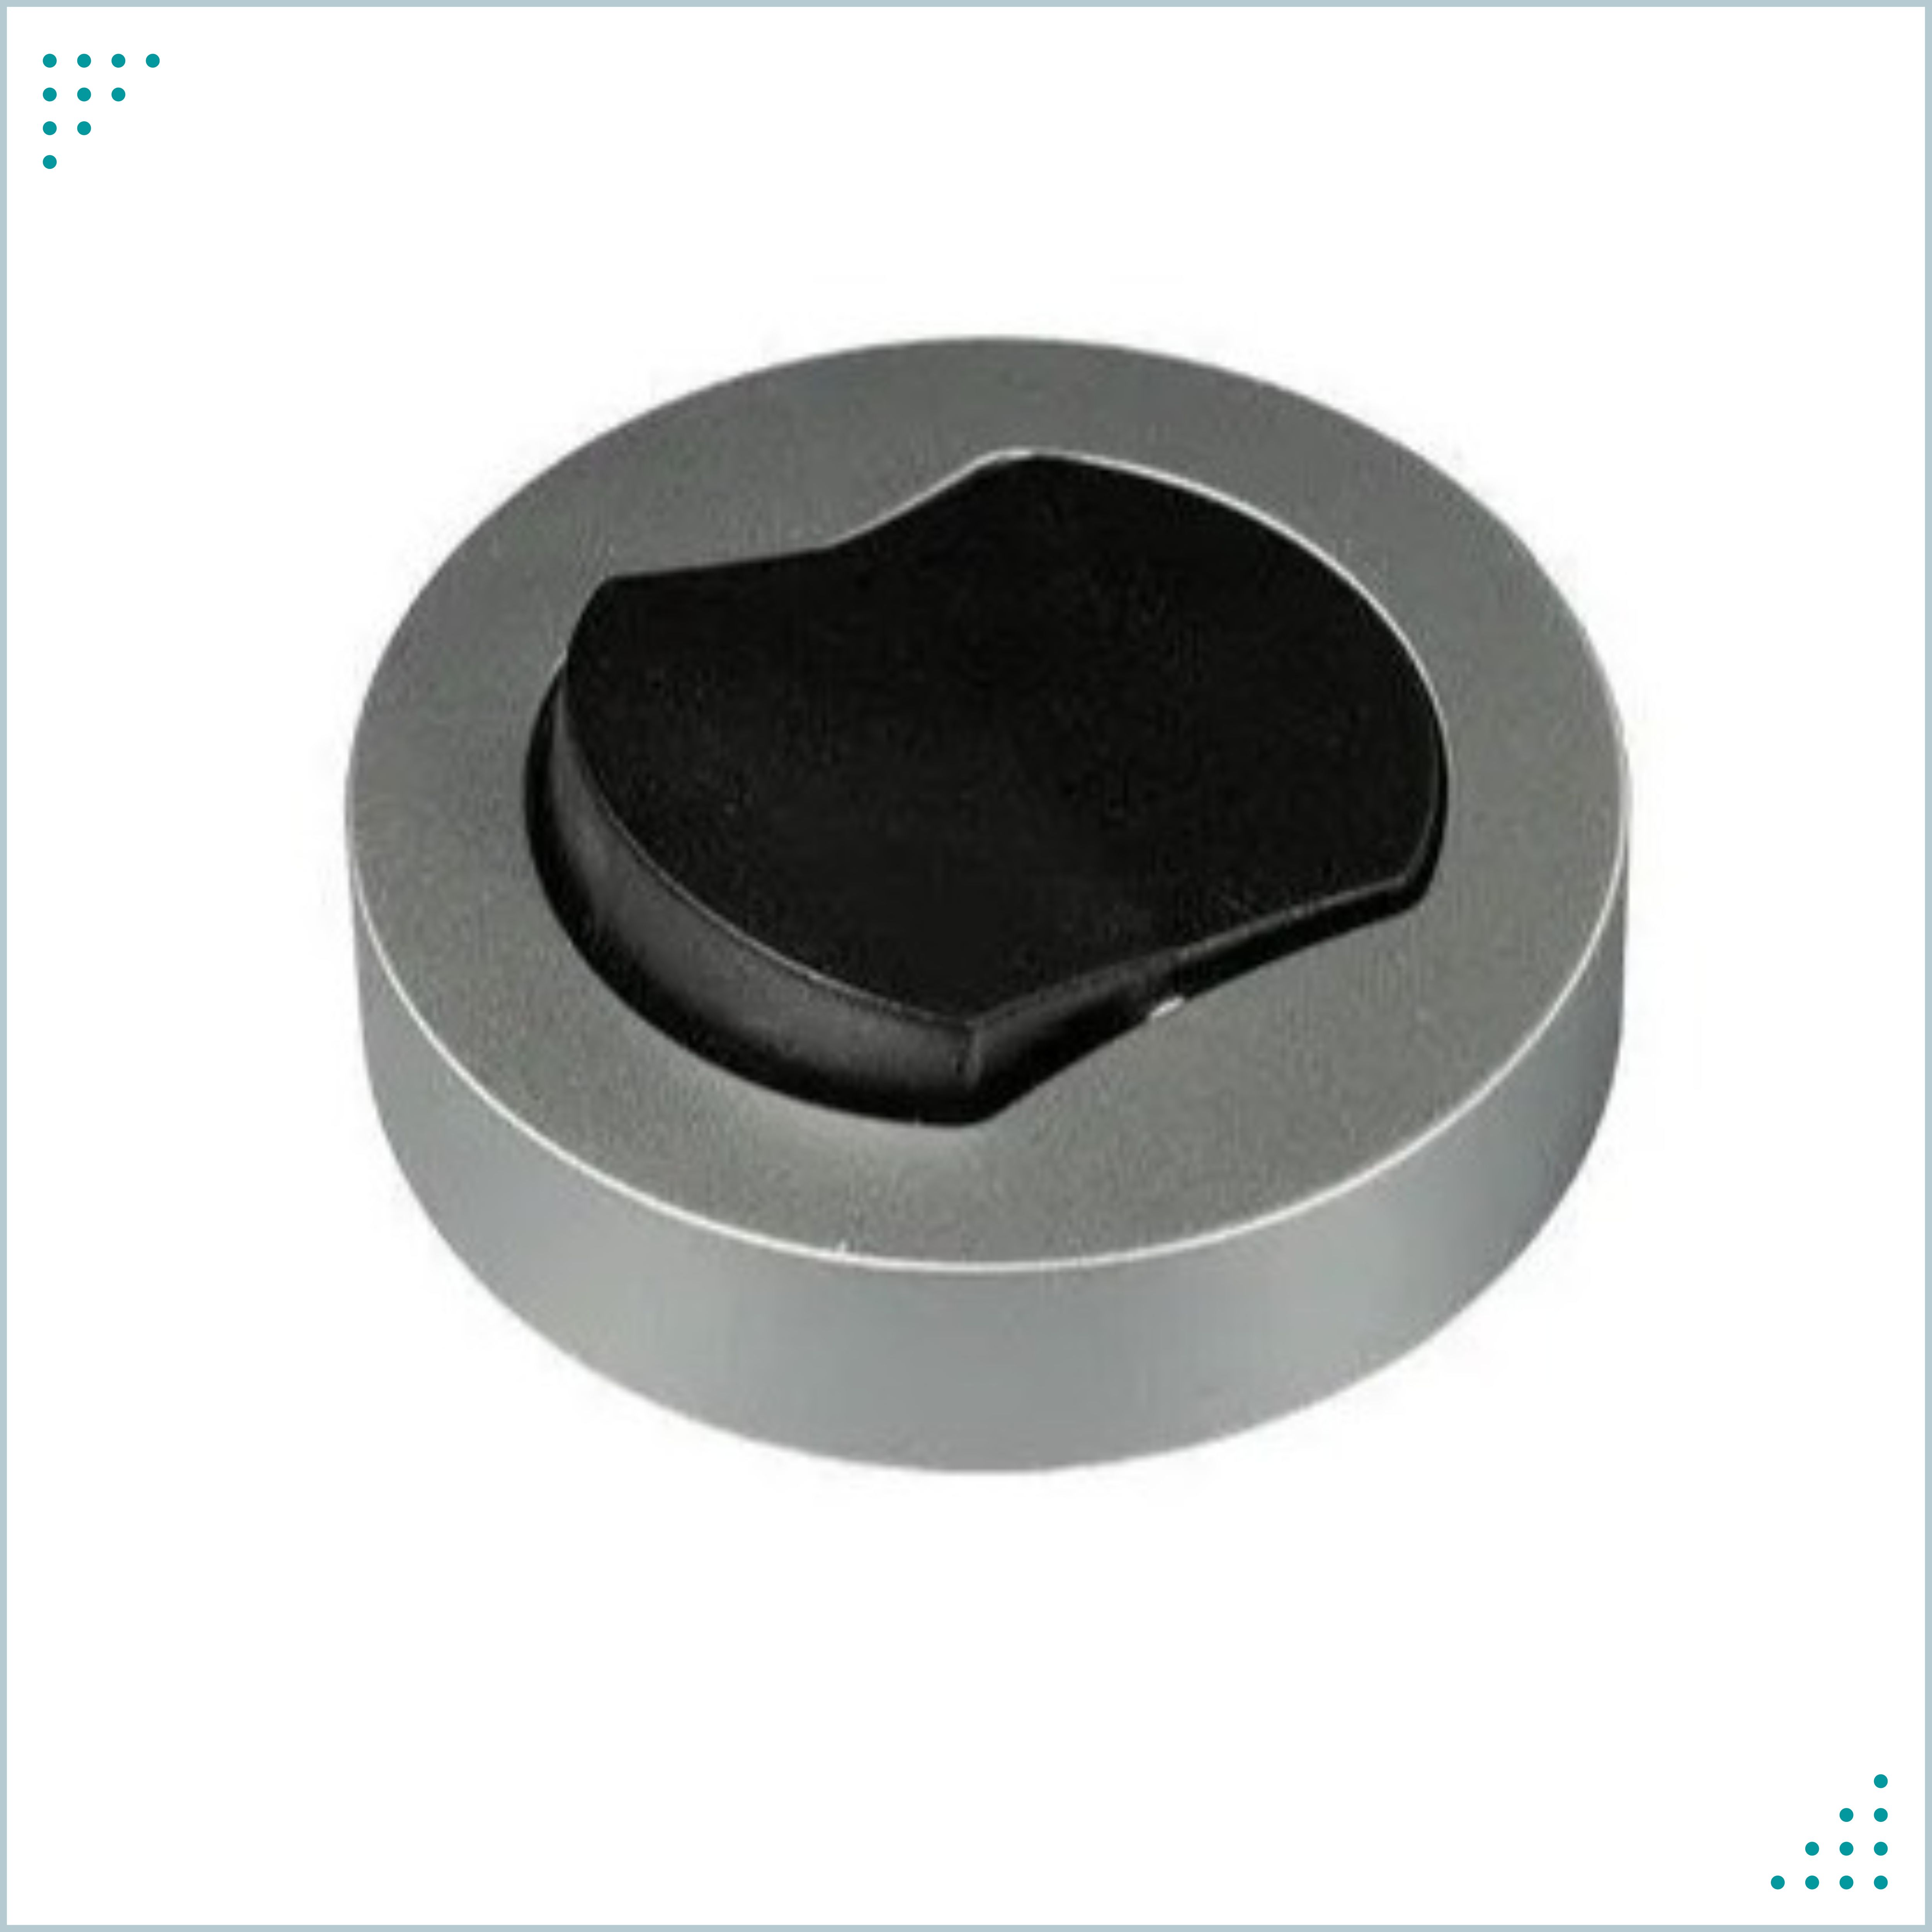 Выключатель накладной GLS 09.102.02.212 мебельный круглый с проводом 0.2м серебристо-серый